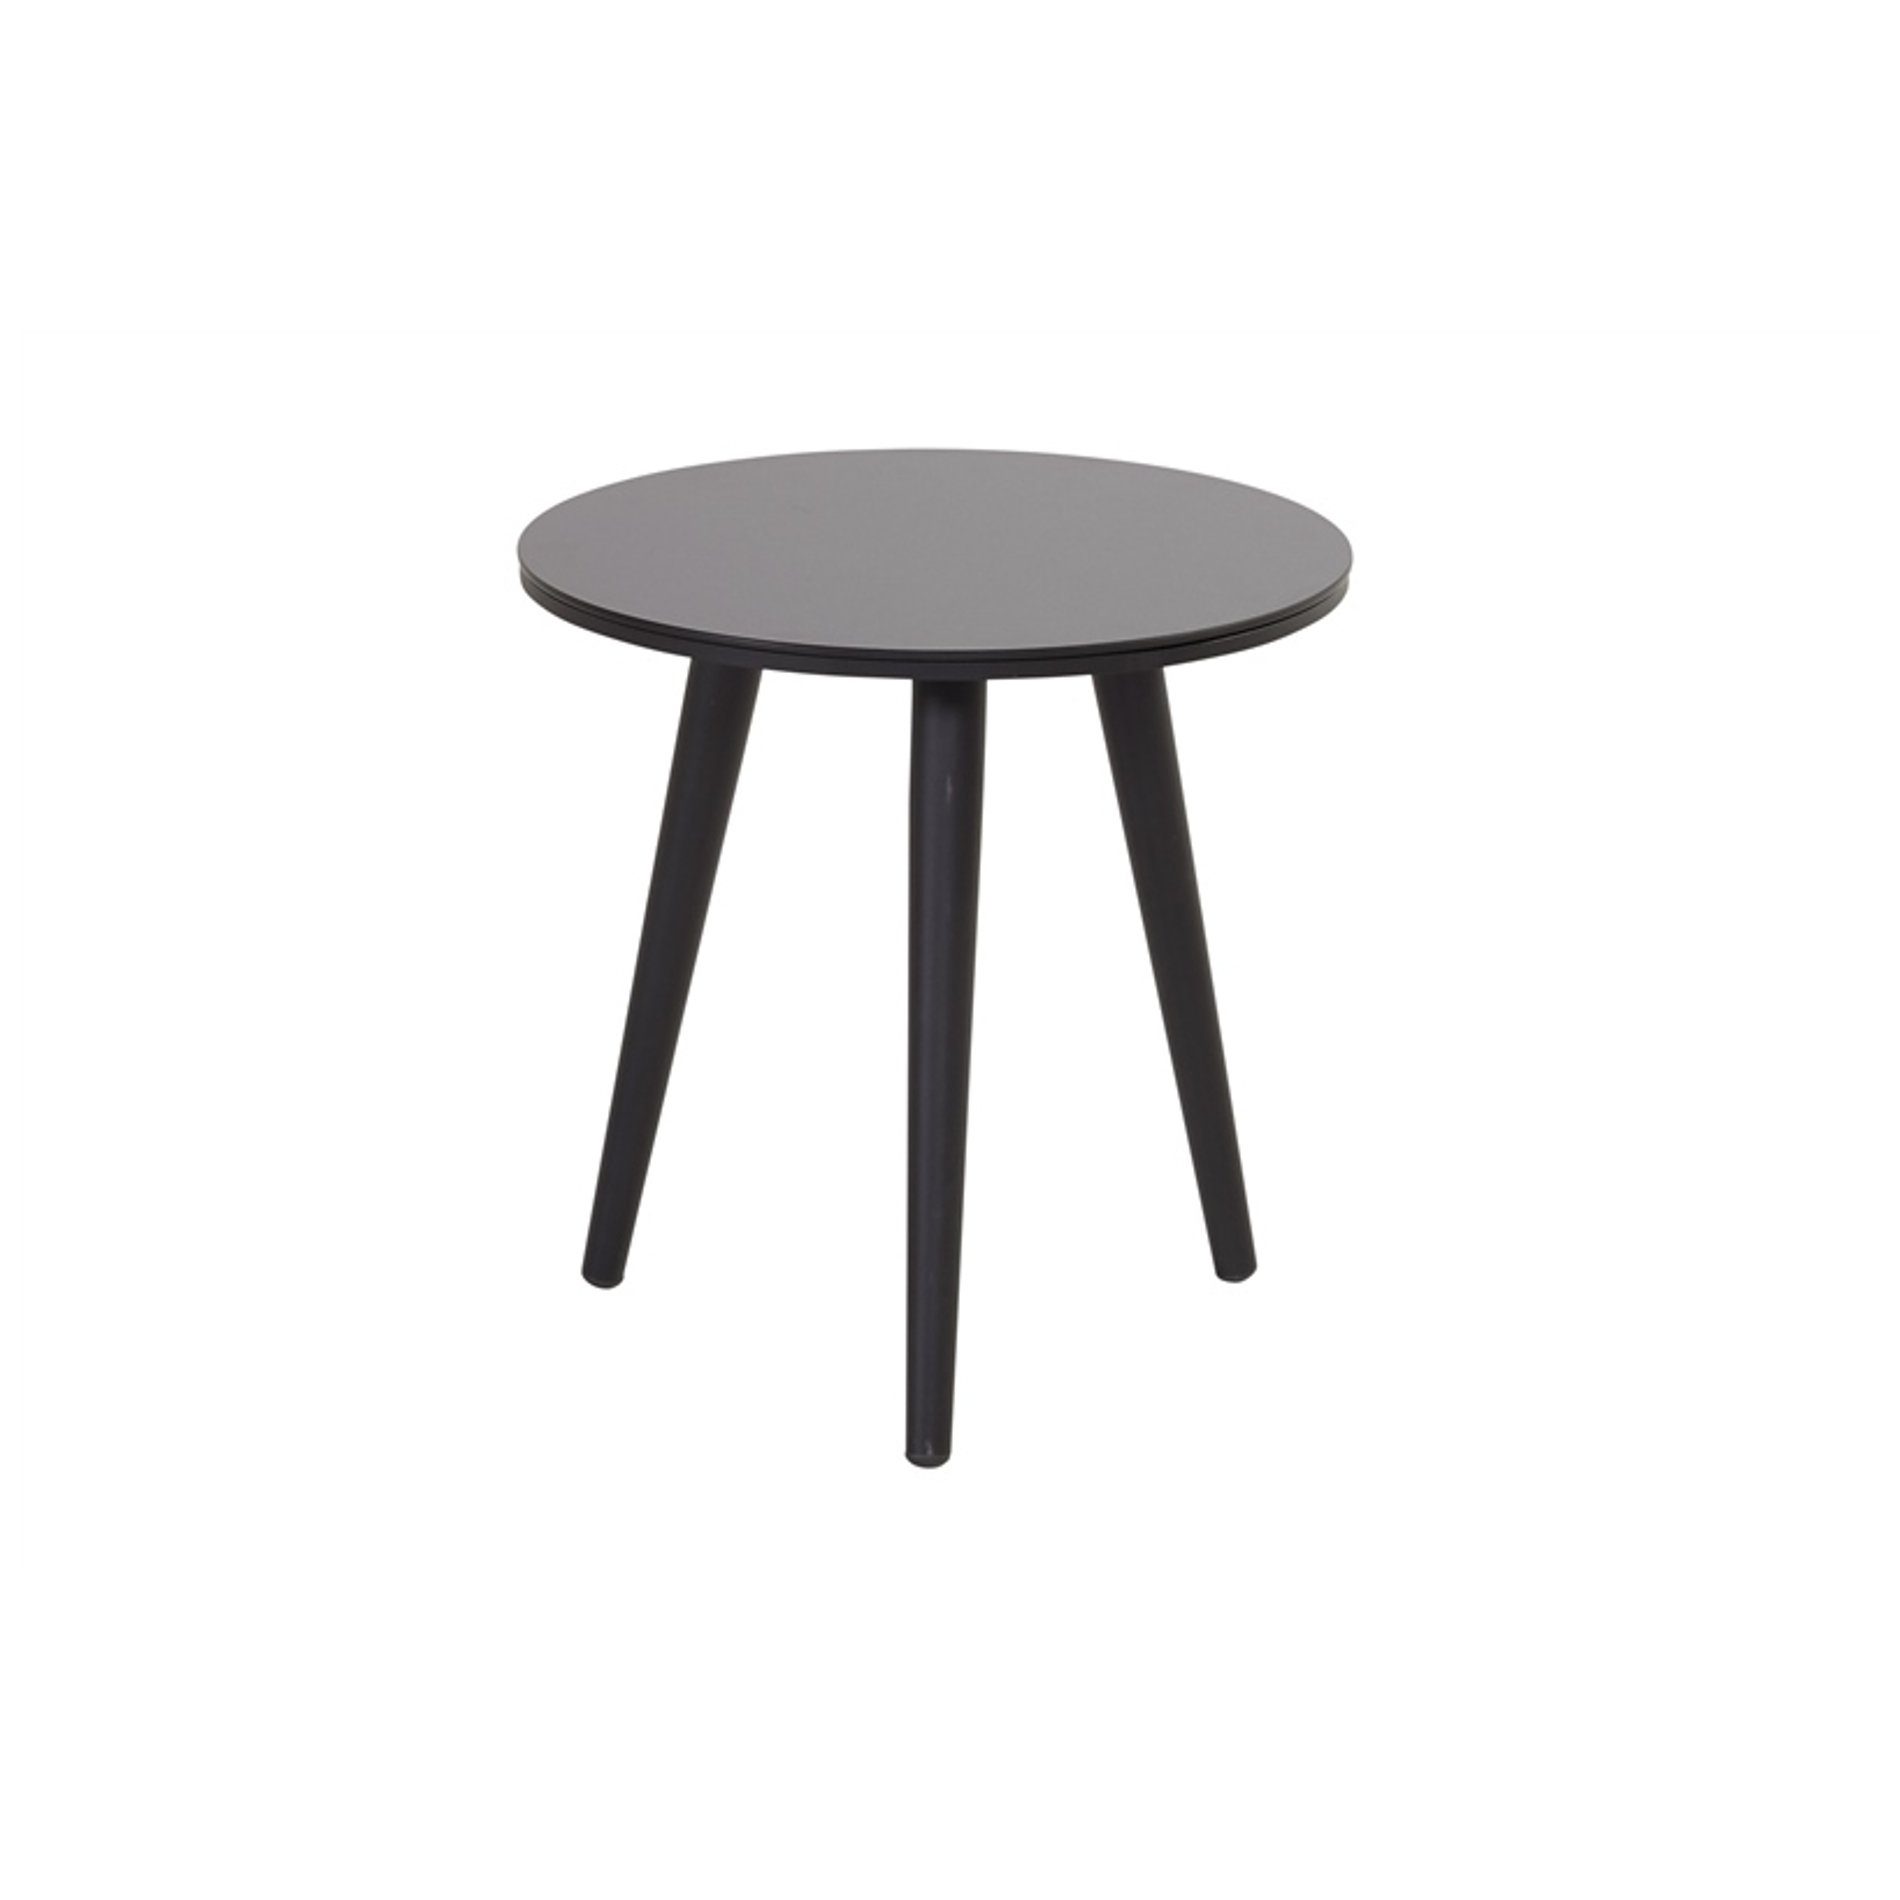 Hartman "Sophie Studio" Beistelltisch, Gestell Aluminium carbon black, Tischplatte HPL black, Ø 45 cm, Tischhöhe: 45 cm